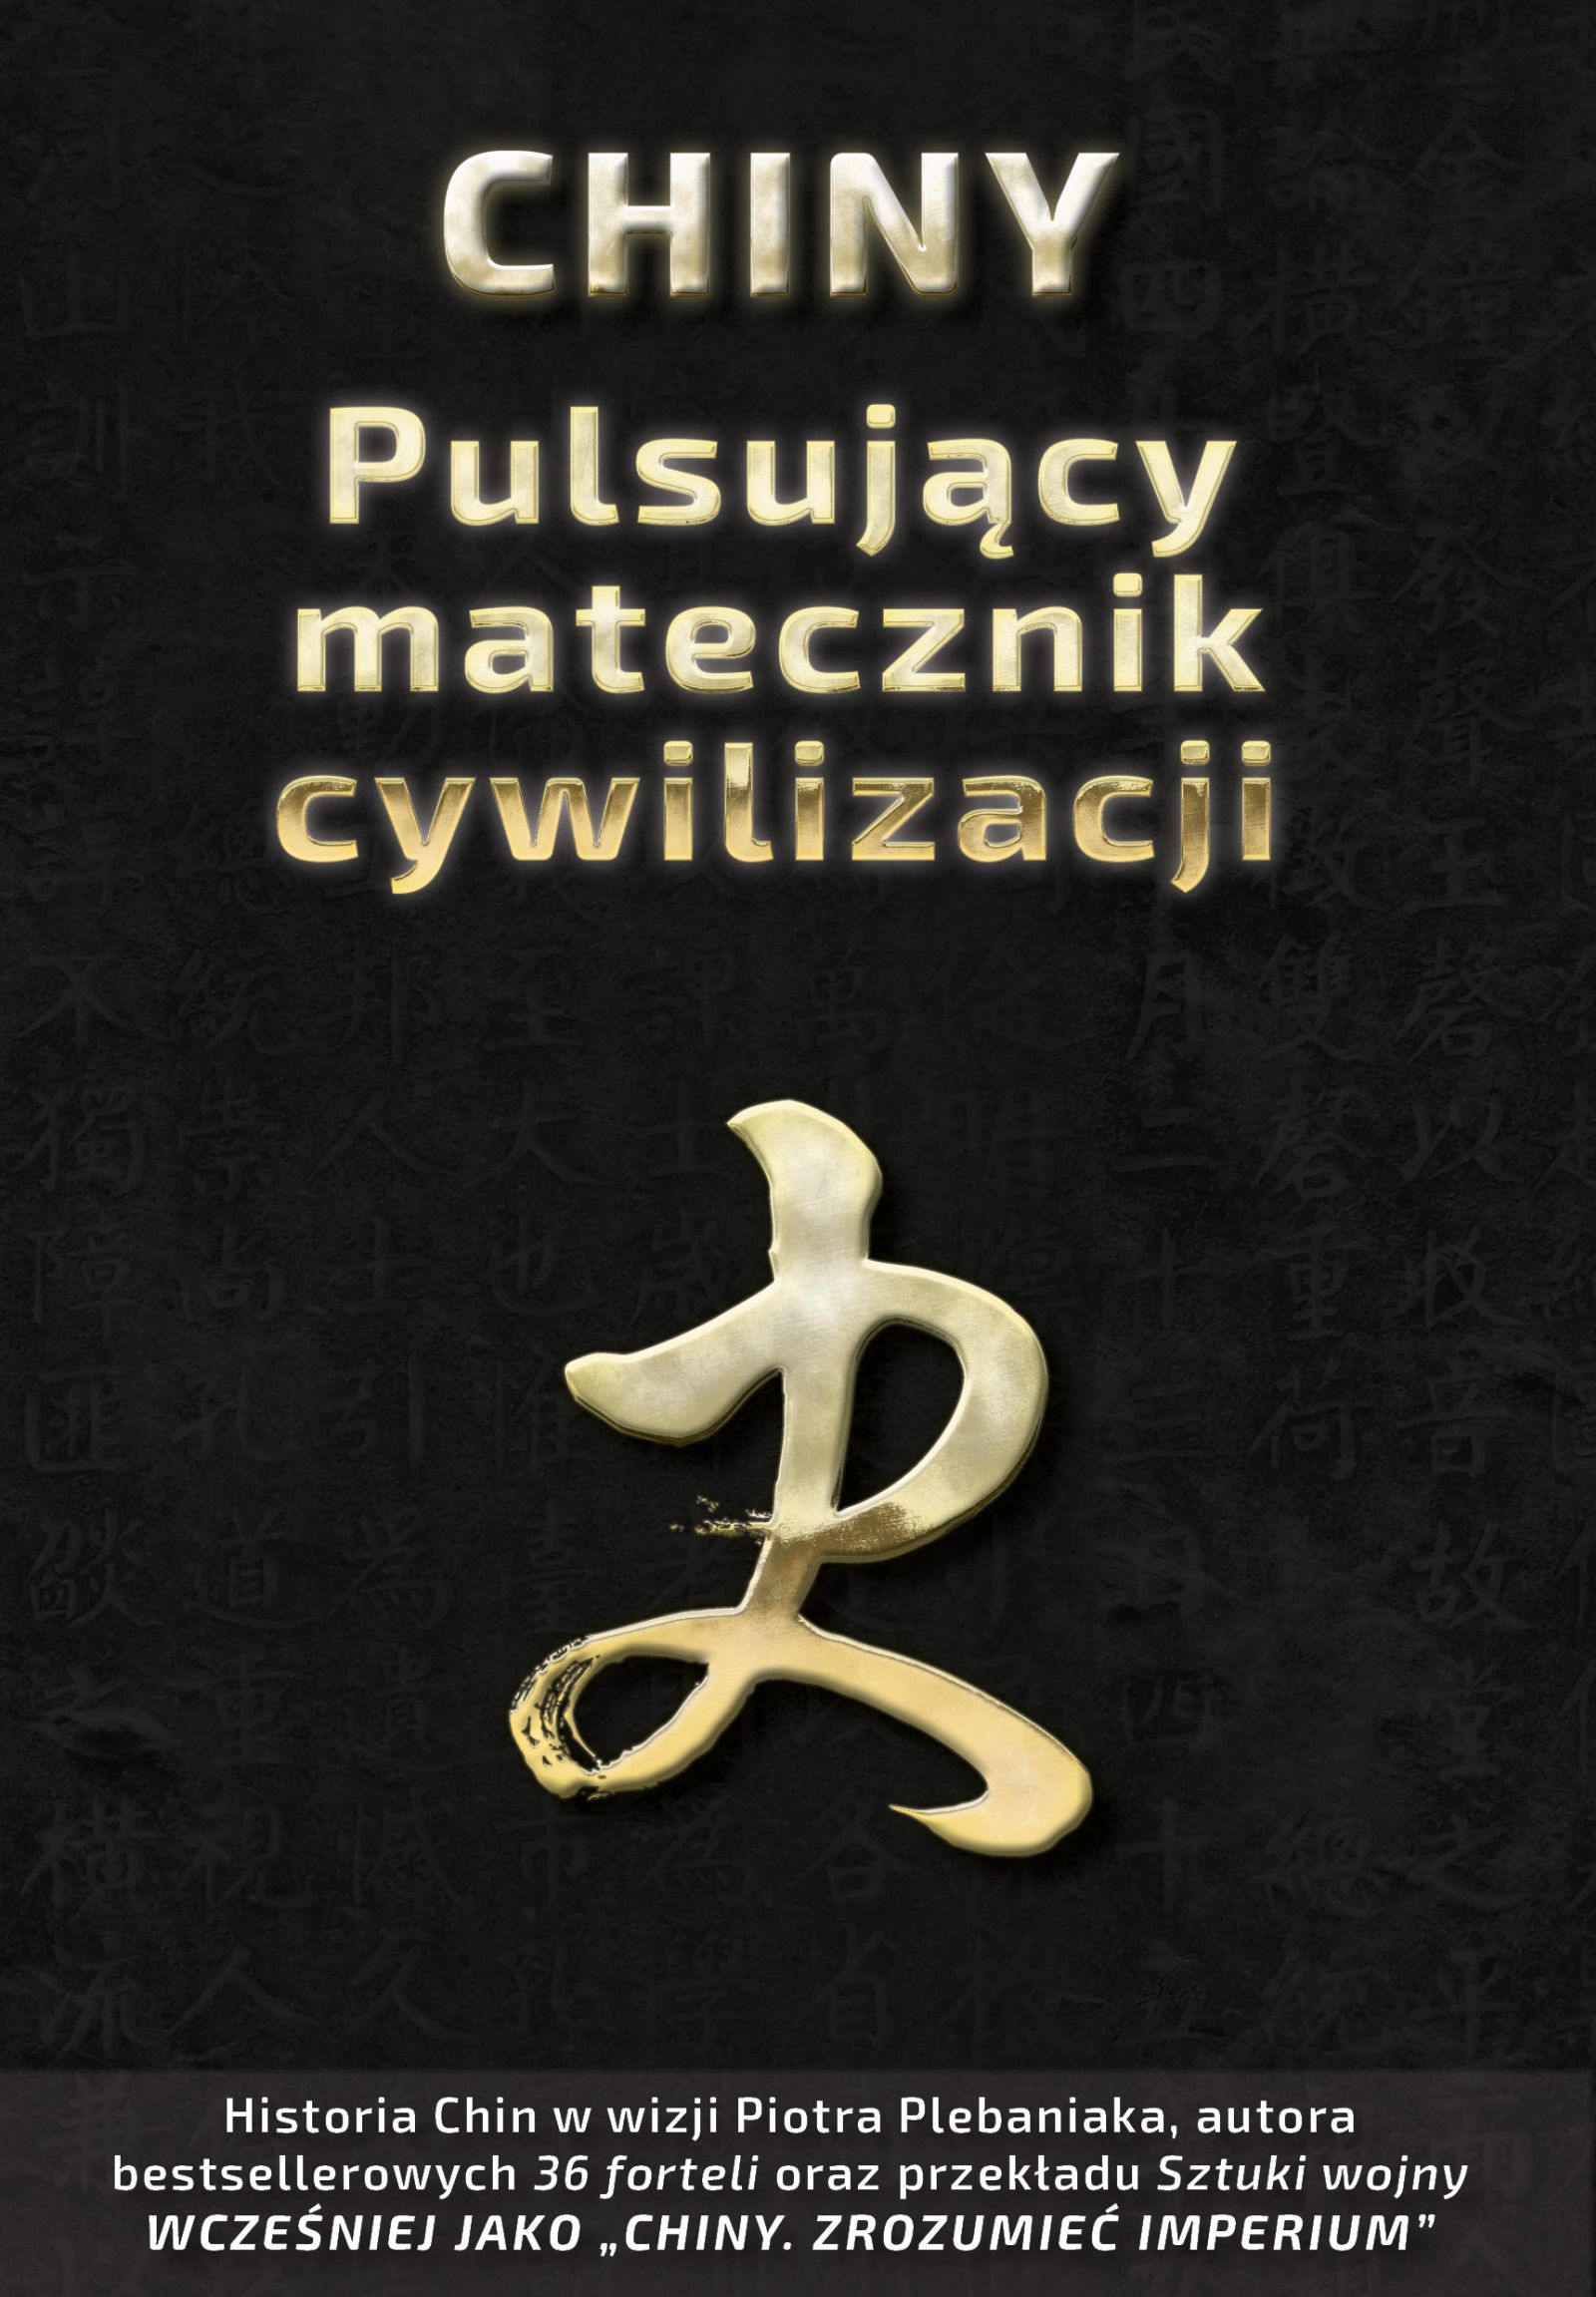 Zestaw „Chińska sztuka wojenna” | Piotr Plebaniak, Chiny 一 Pulsujący matecznik cywilizacji 